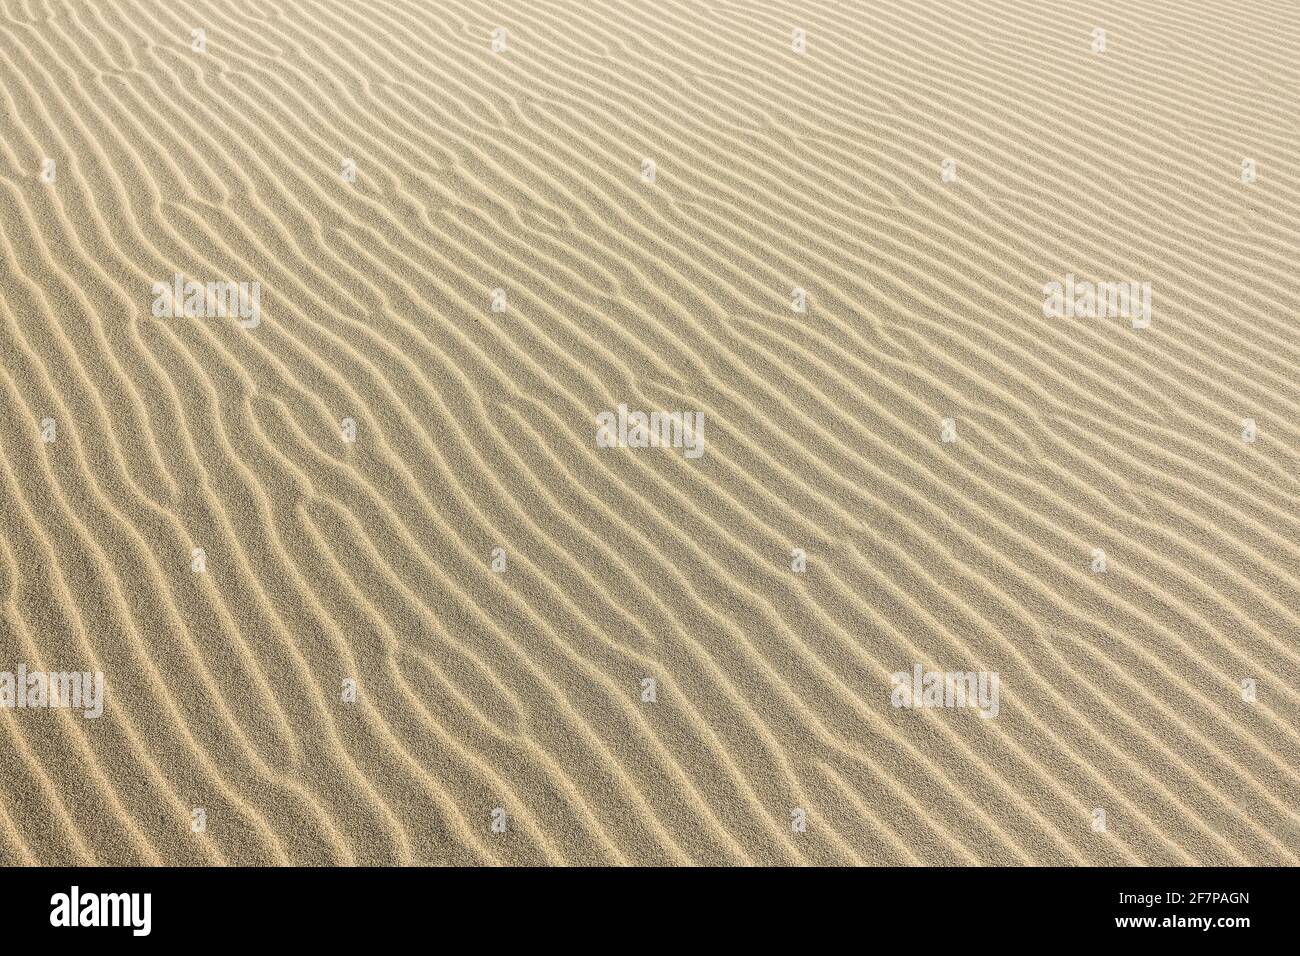 La textura de la arena en una duna en el desierto Foto de stock